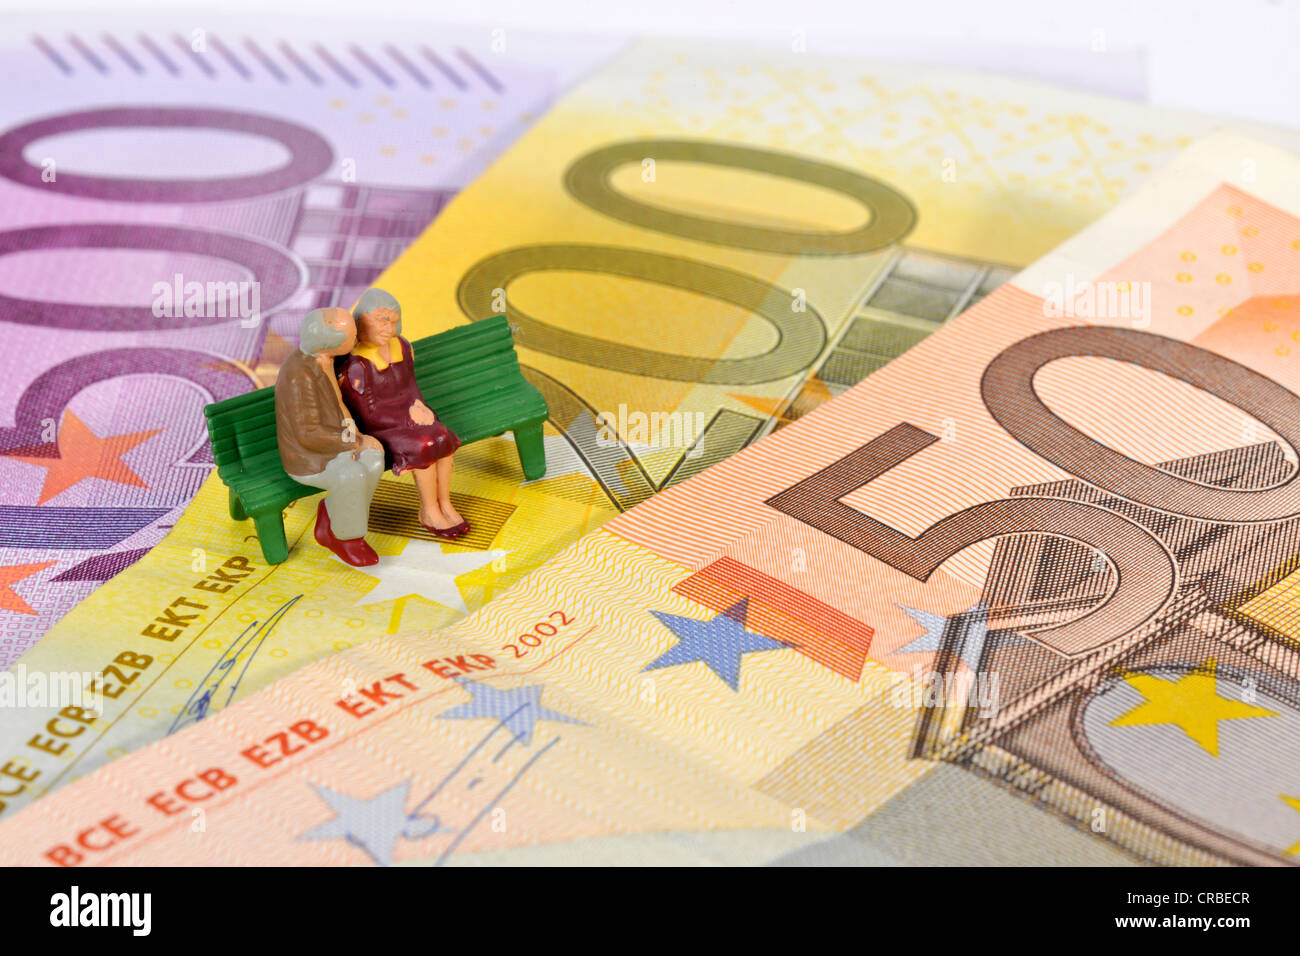 Miniatur-Figuren von einem Ehepaar im Ruhestand sitzt auf einer Parkbank auf Euro-Banknoten, symbolisches Bild für den Ruhestand, pension Stockfoto